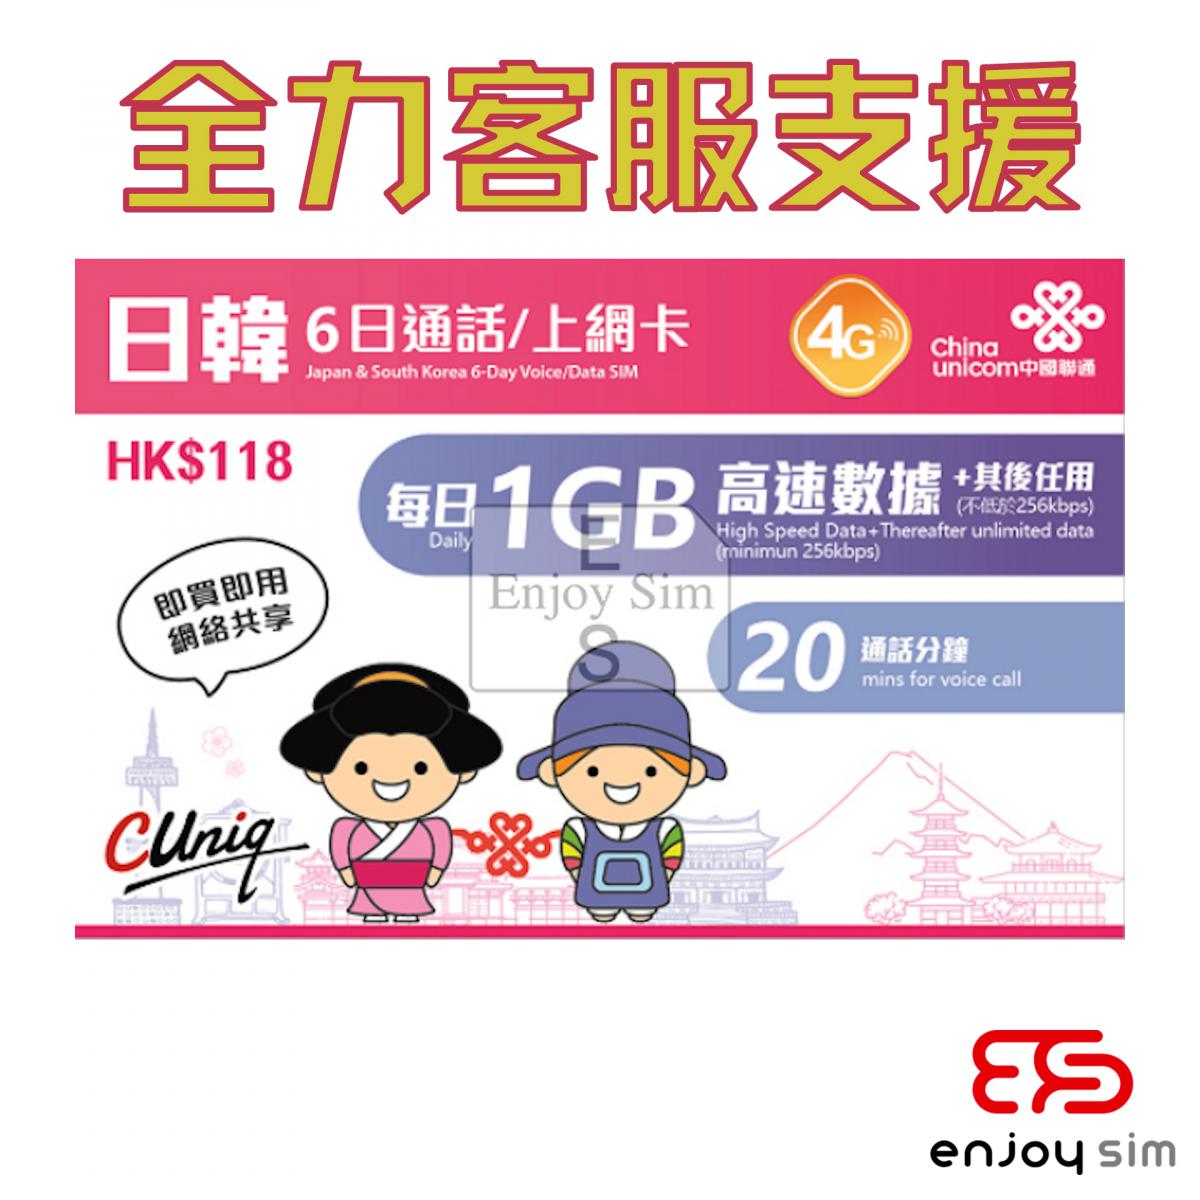 6日通話【日韓】(每日1GB) 日本、韓國 4G/3G無限上網卡數據卡SIM卡電話咭